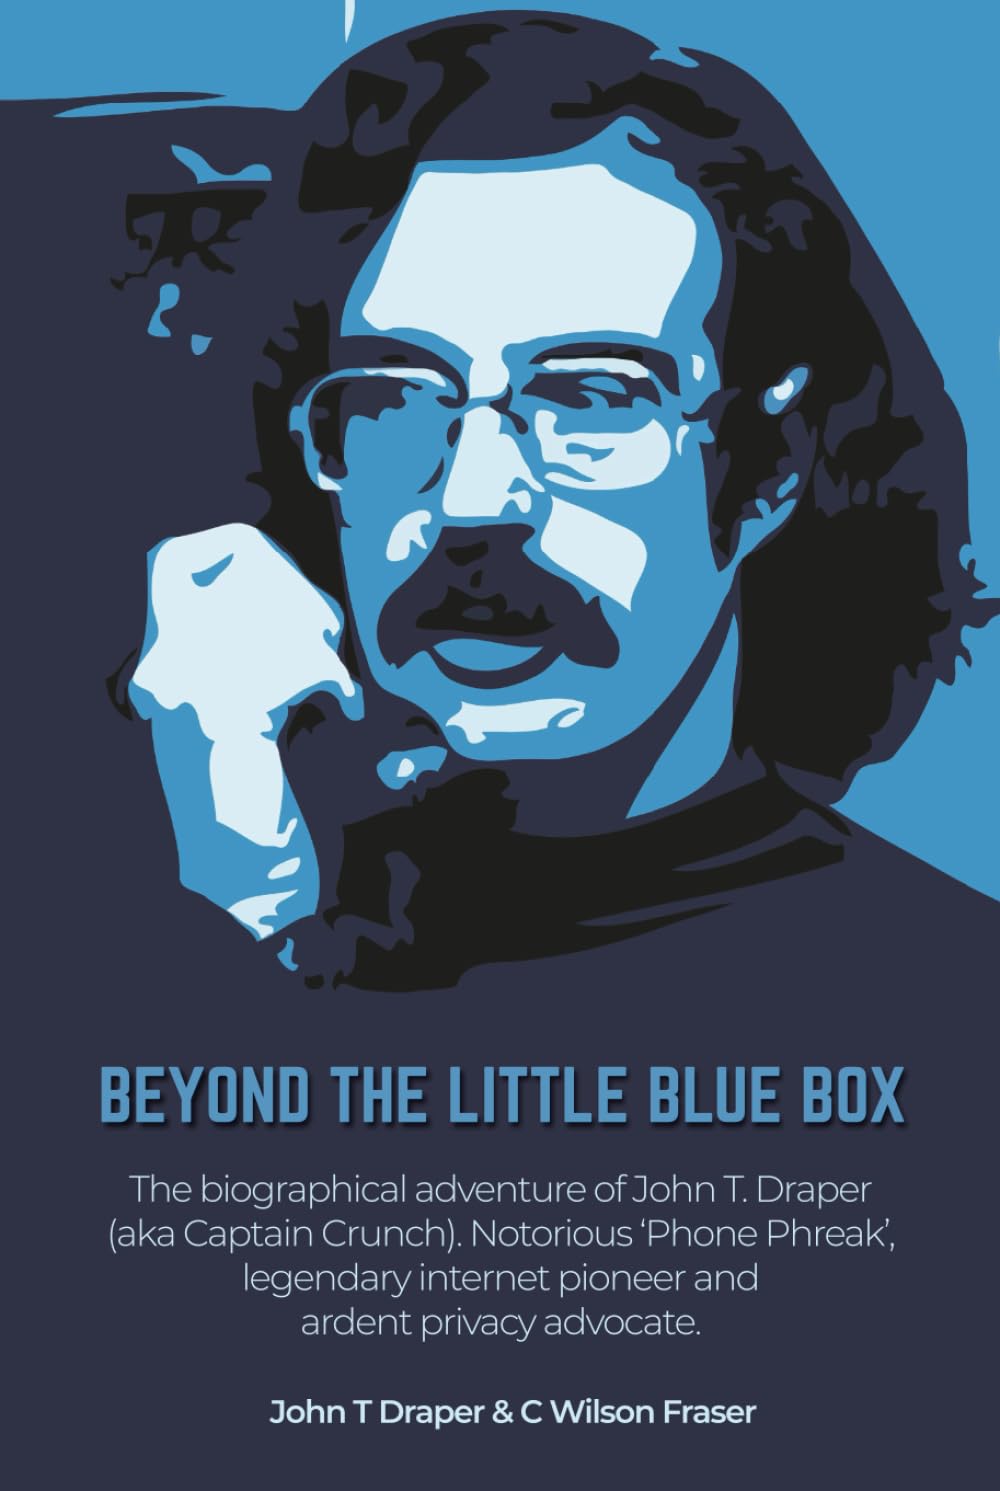 John T Draper, C Wilson Fraser, Steve Wozniak: Beyond the Little Blue Box (Hardcover, FriesenPress)